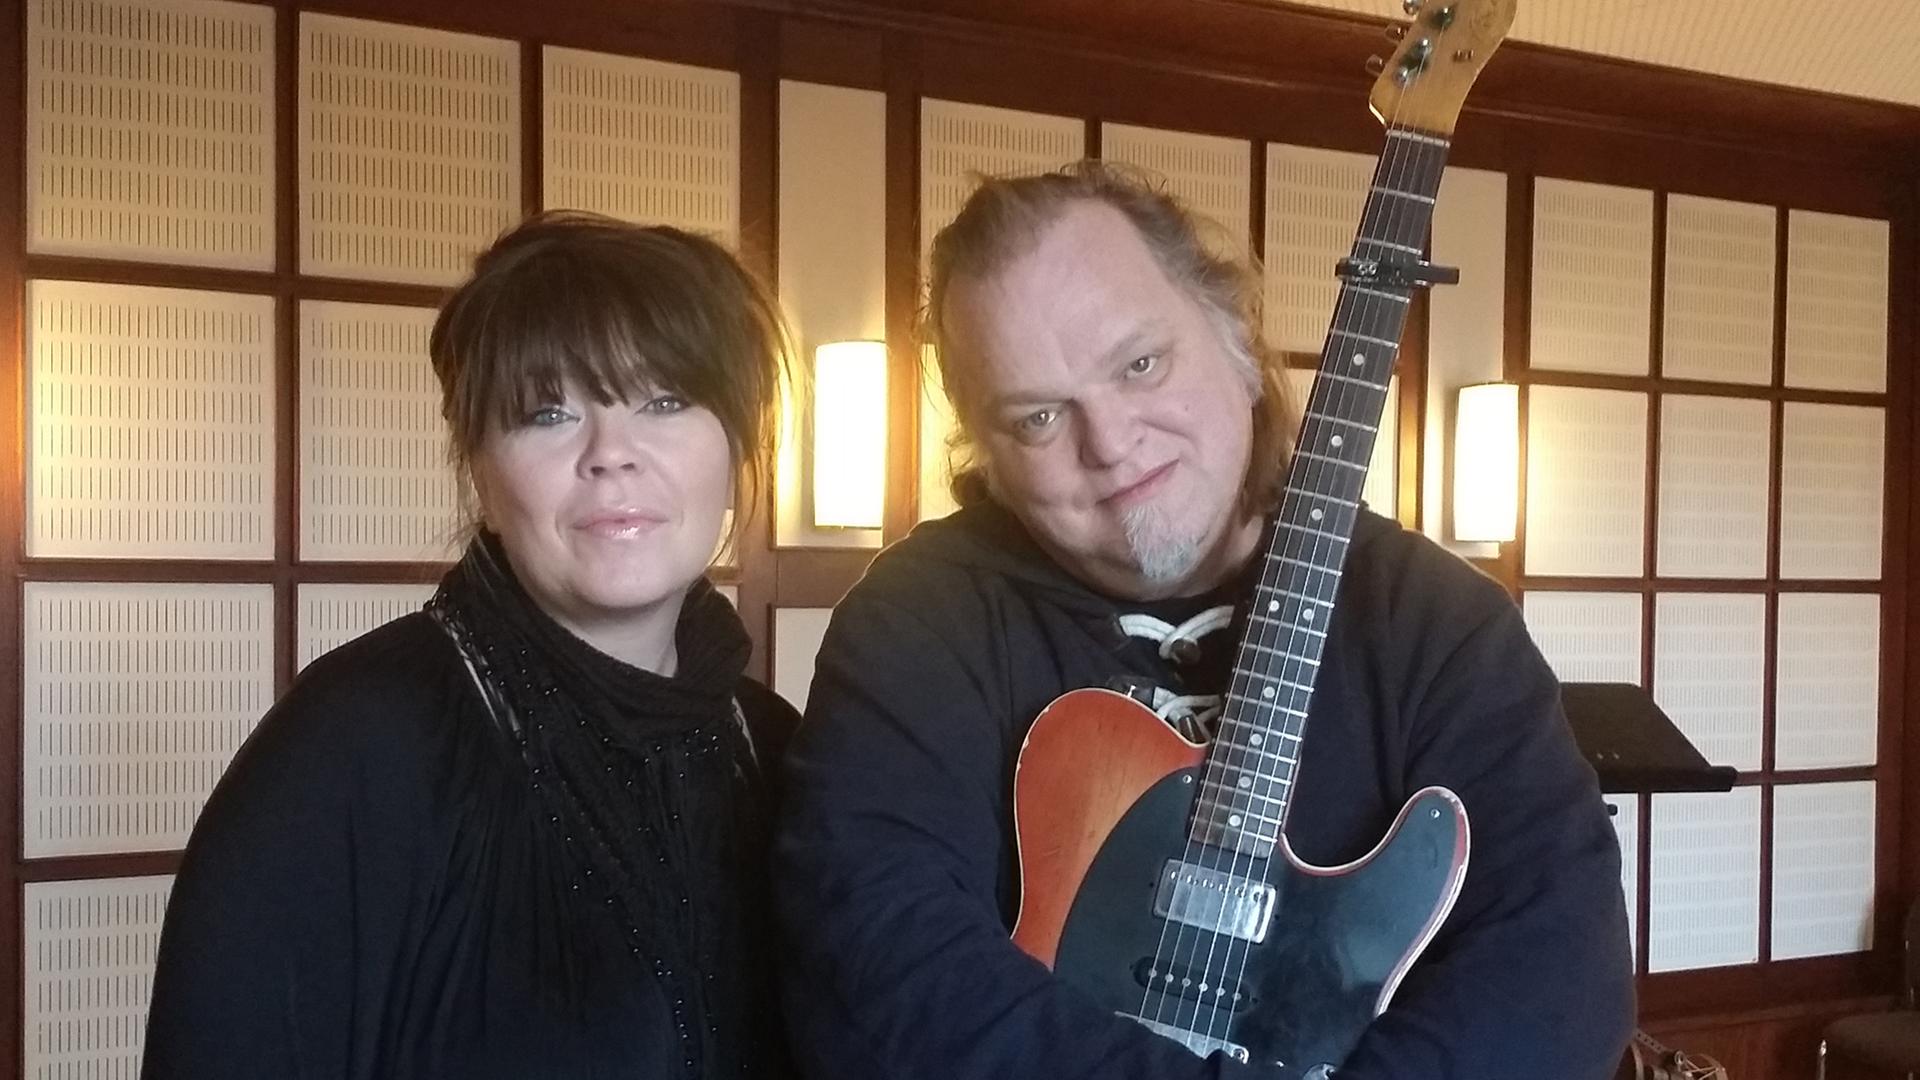 Die norwegische Sängerin Solveig Slettahjell mit ihrem Gitarristen Knut Reiersrud